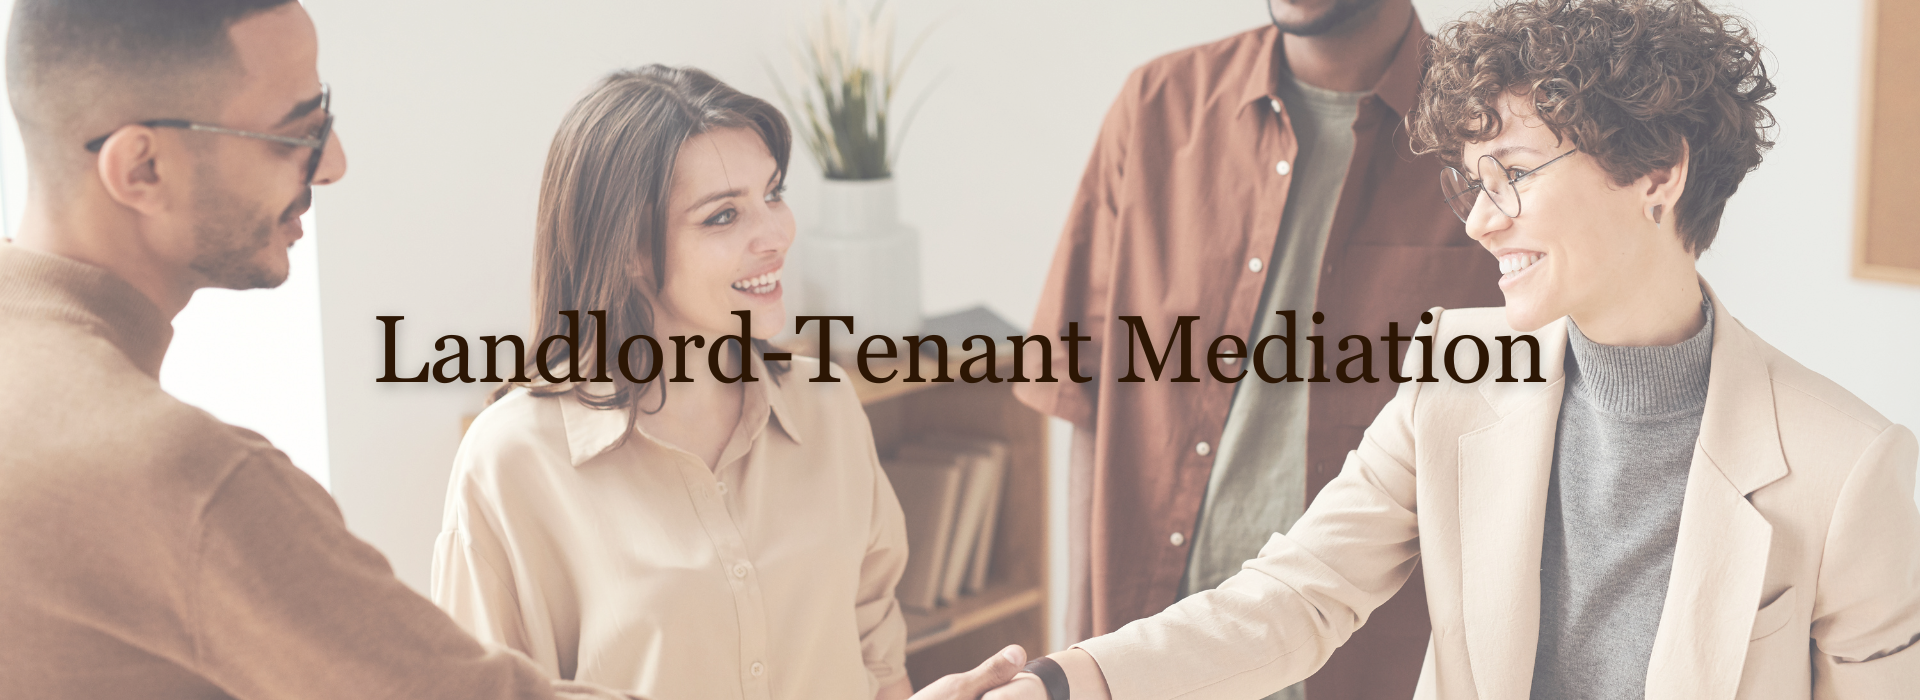 Landlord-Tenant mediation